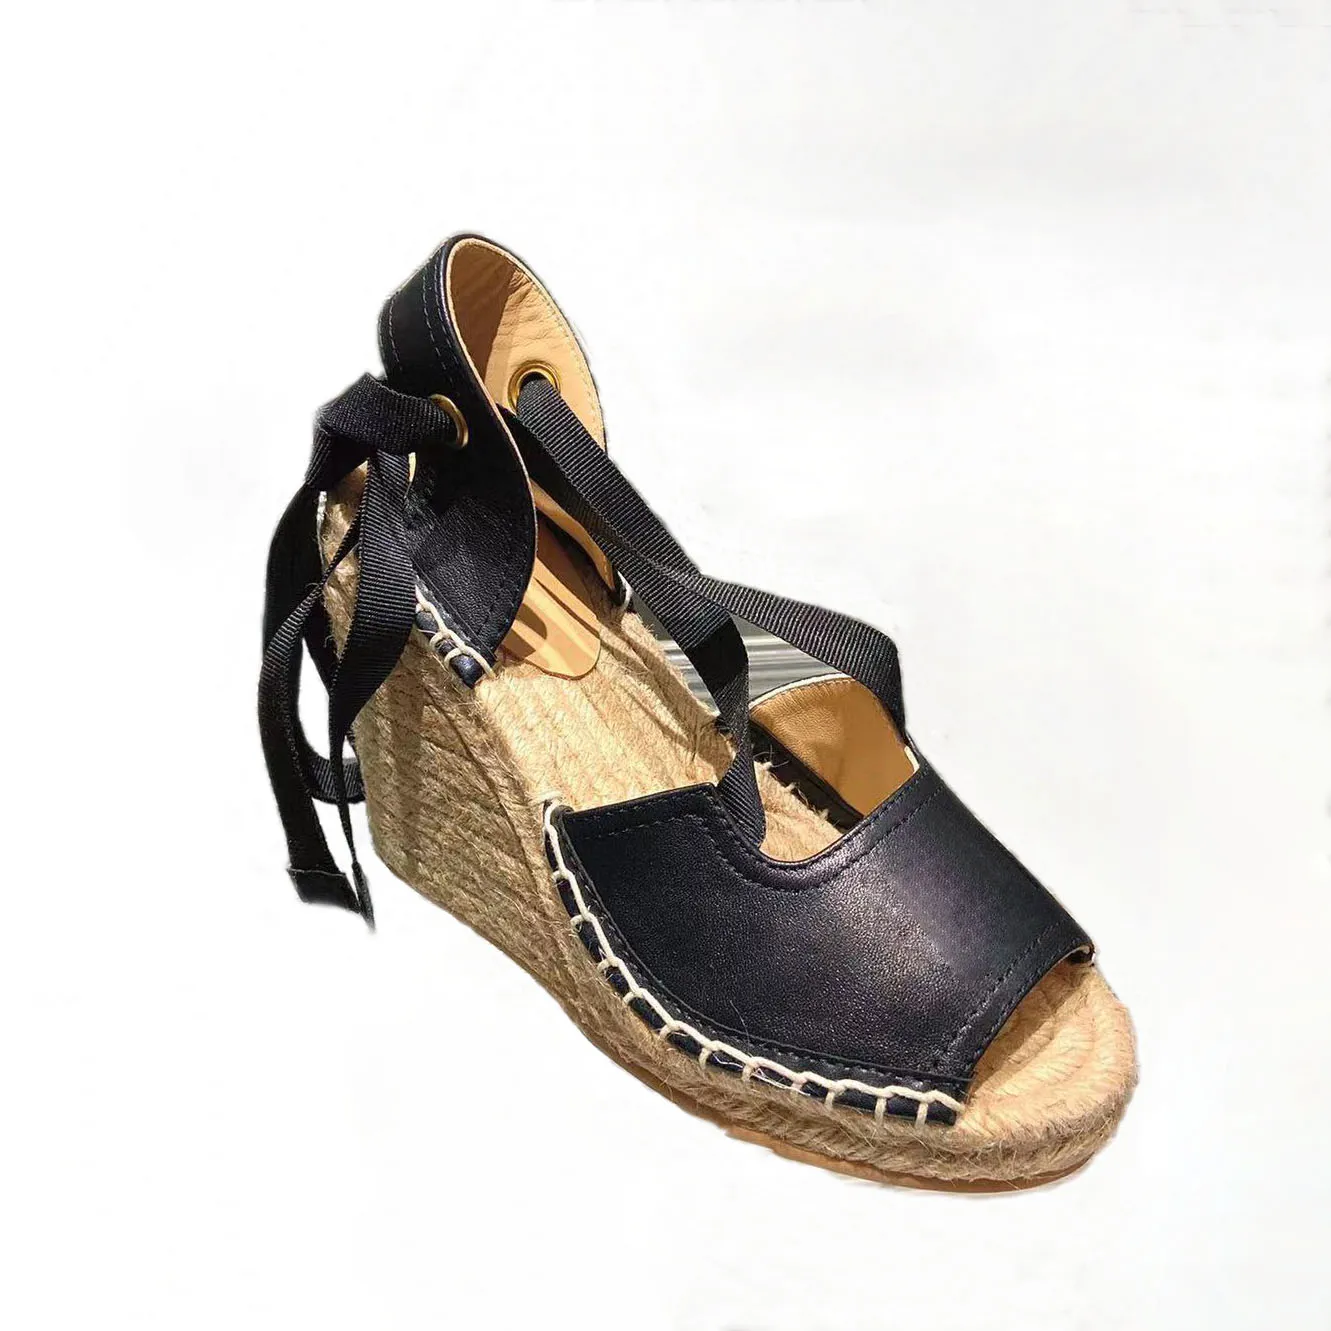 Sandały Klapki damskie Slide Moda letnia Szerokie sandały na płaskim obcasie Klapki wewnętrzne z rozmiarem pudełka EUR35-41